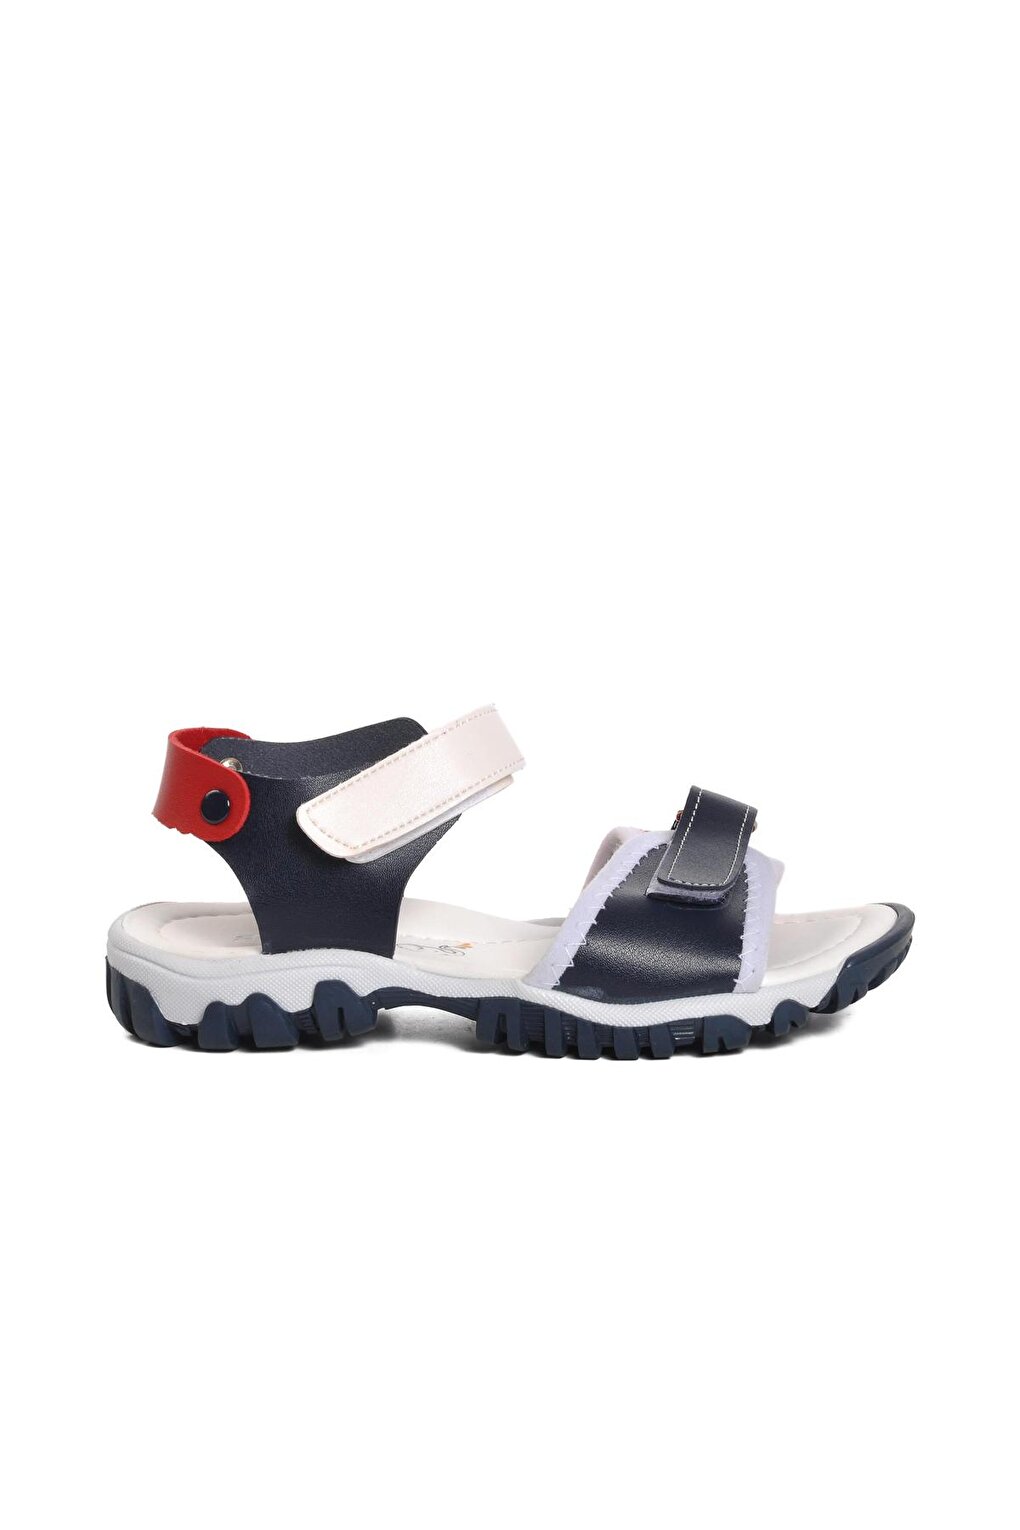 Ортопедические сандалии на липучке для мальчика 22Y06-F Ayakmod кроссовки на липучке для мальчика чёрно дымчатые mely f walkway